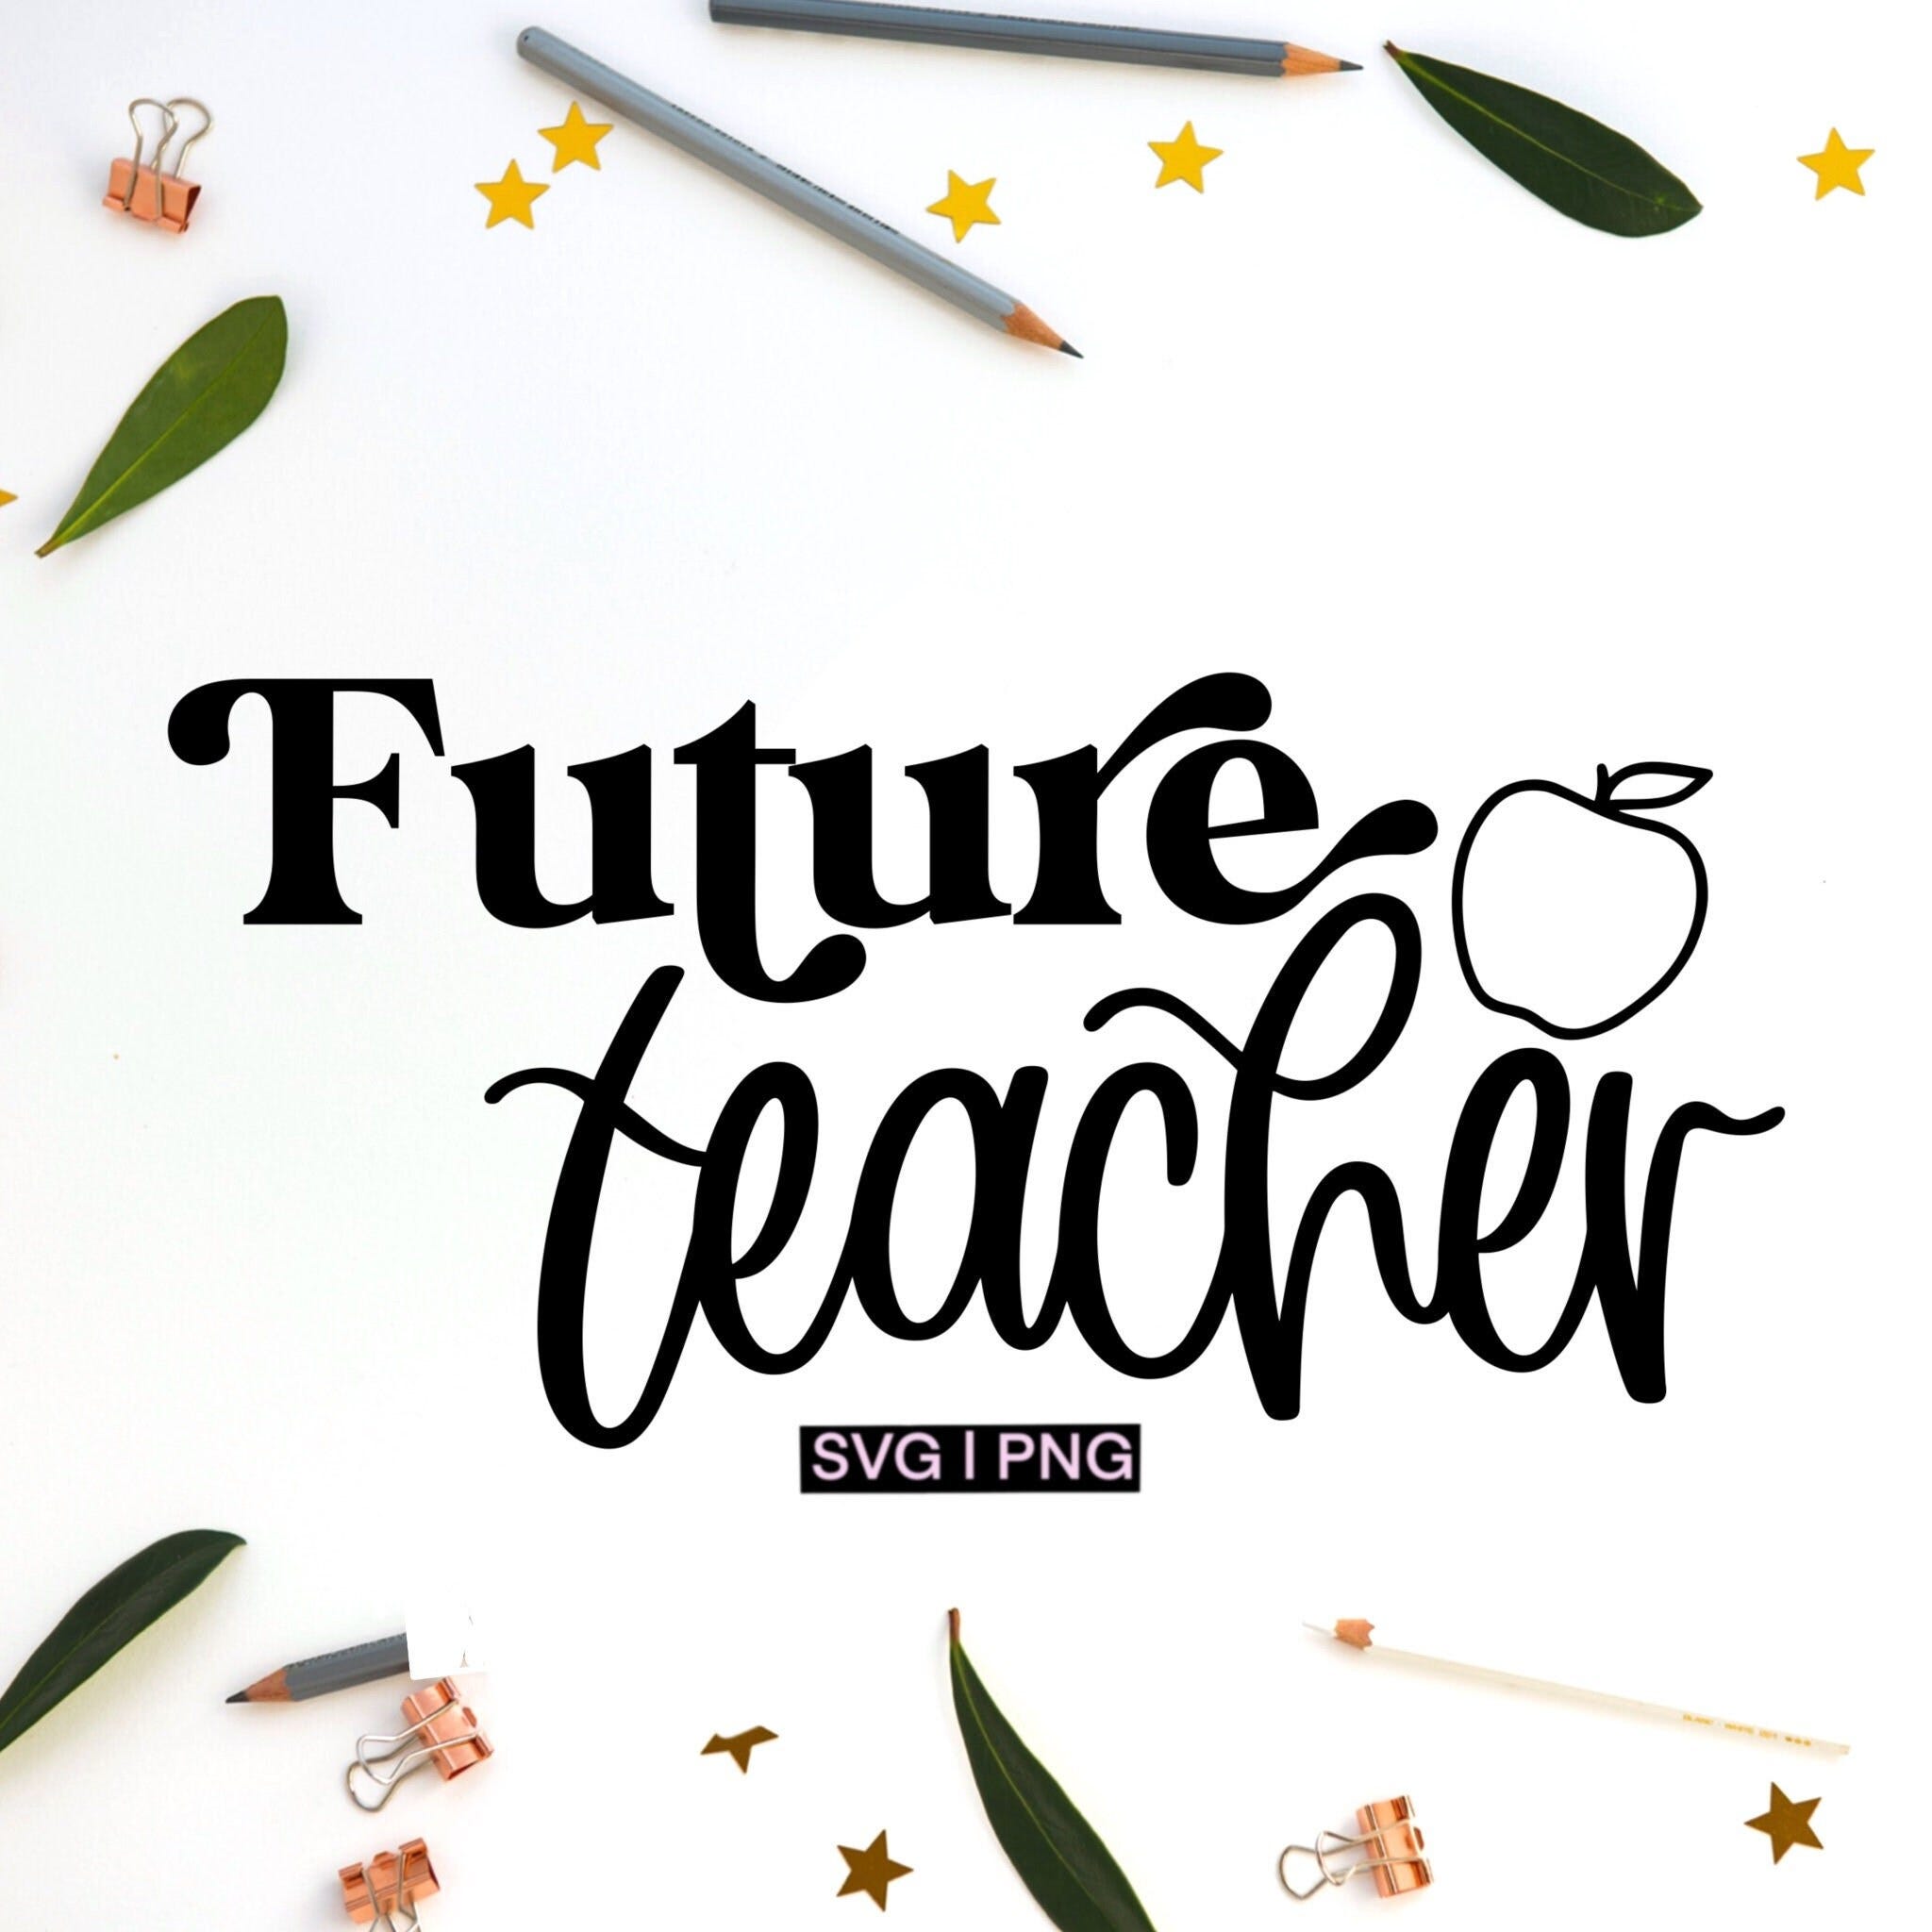 Future teacher svg, teacher svg, teaching shirt svg, teacher in progress svg, student teacher svg, teacher shirt svg, hand lettered svg, svg